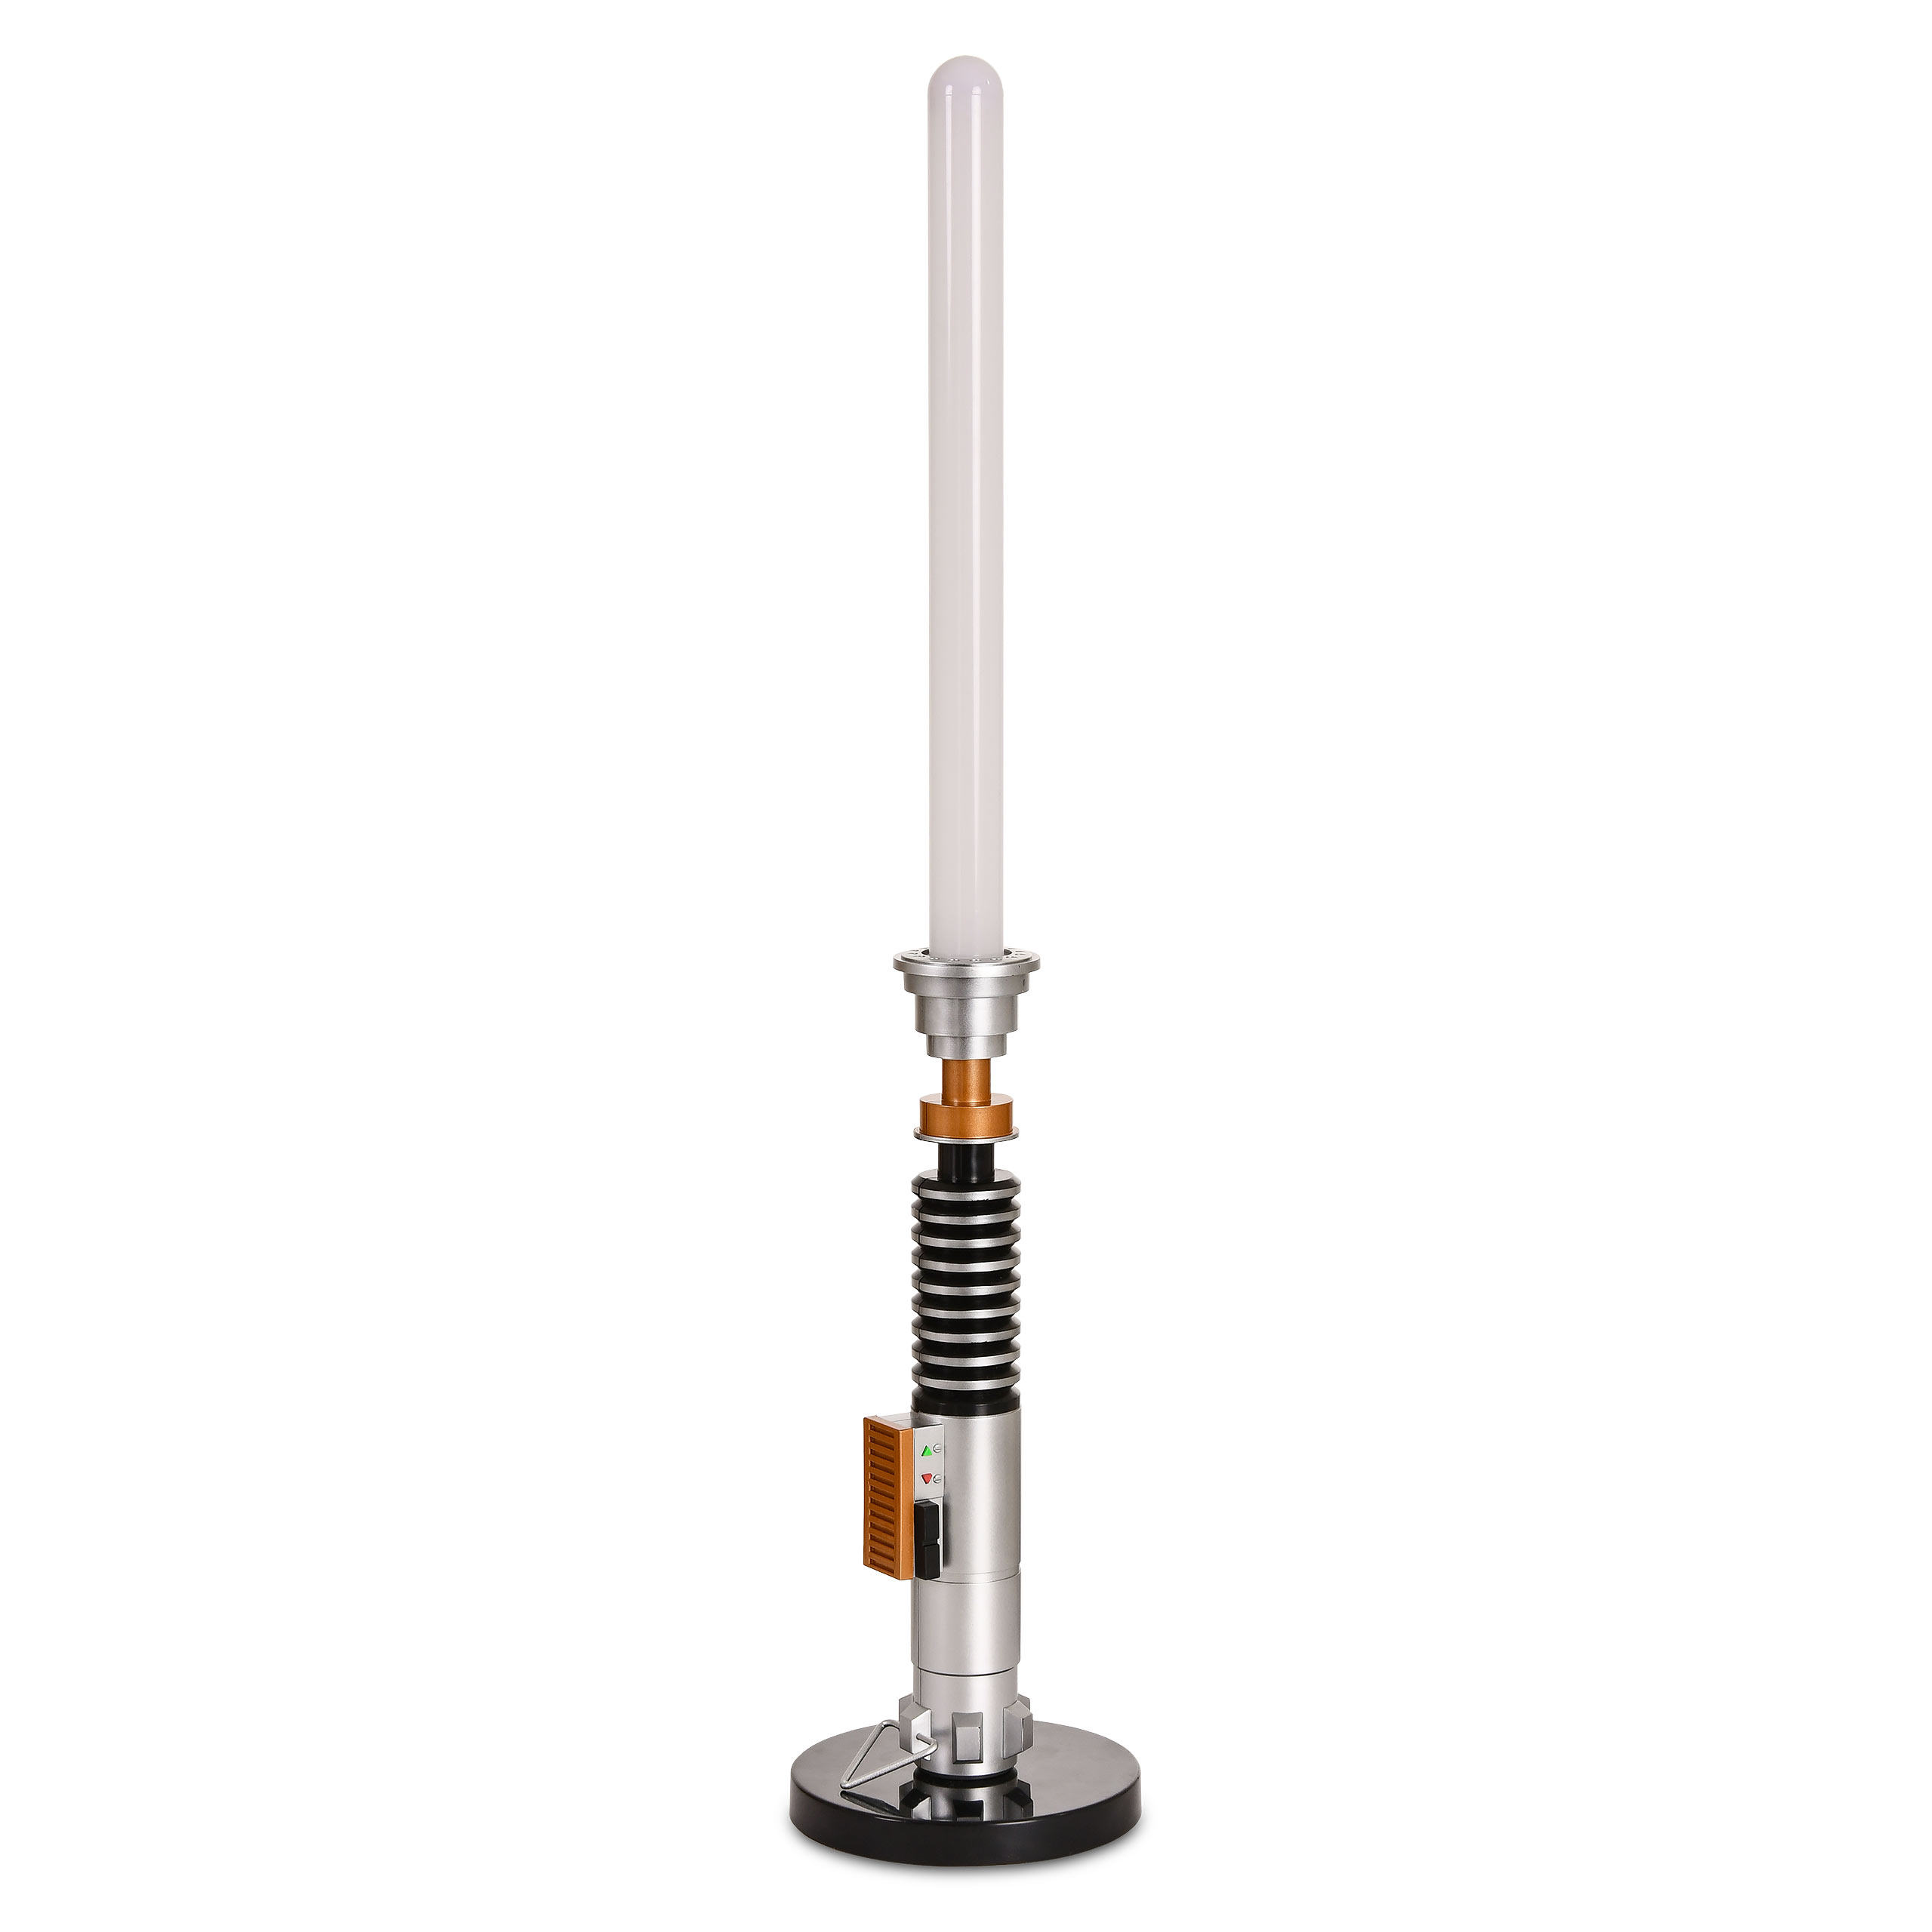 Star Wars - Luke Skywalker Lightsaber Table Lamp